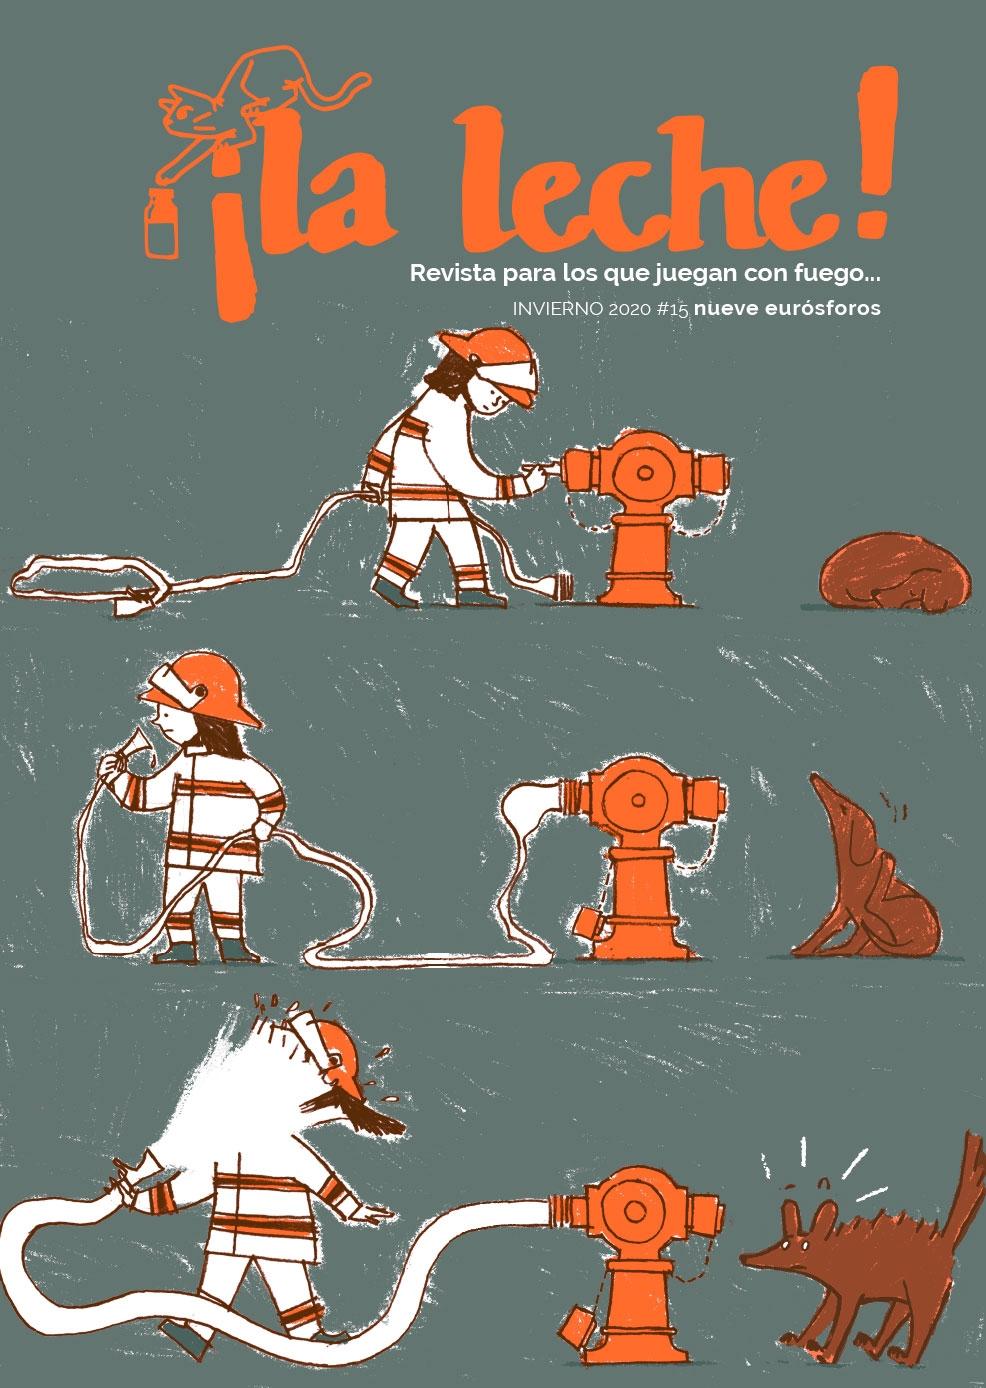 Revista ¡La leche! nº15 "Revista para los que juegan con fuego... | Invierno #15 + Encarte cómo diseñar tu caja de cerillas". 